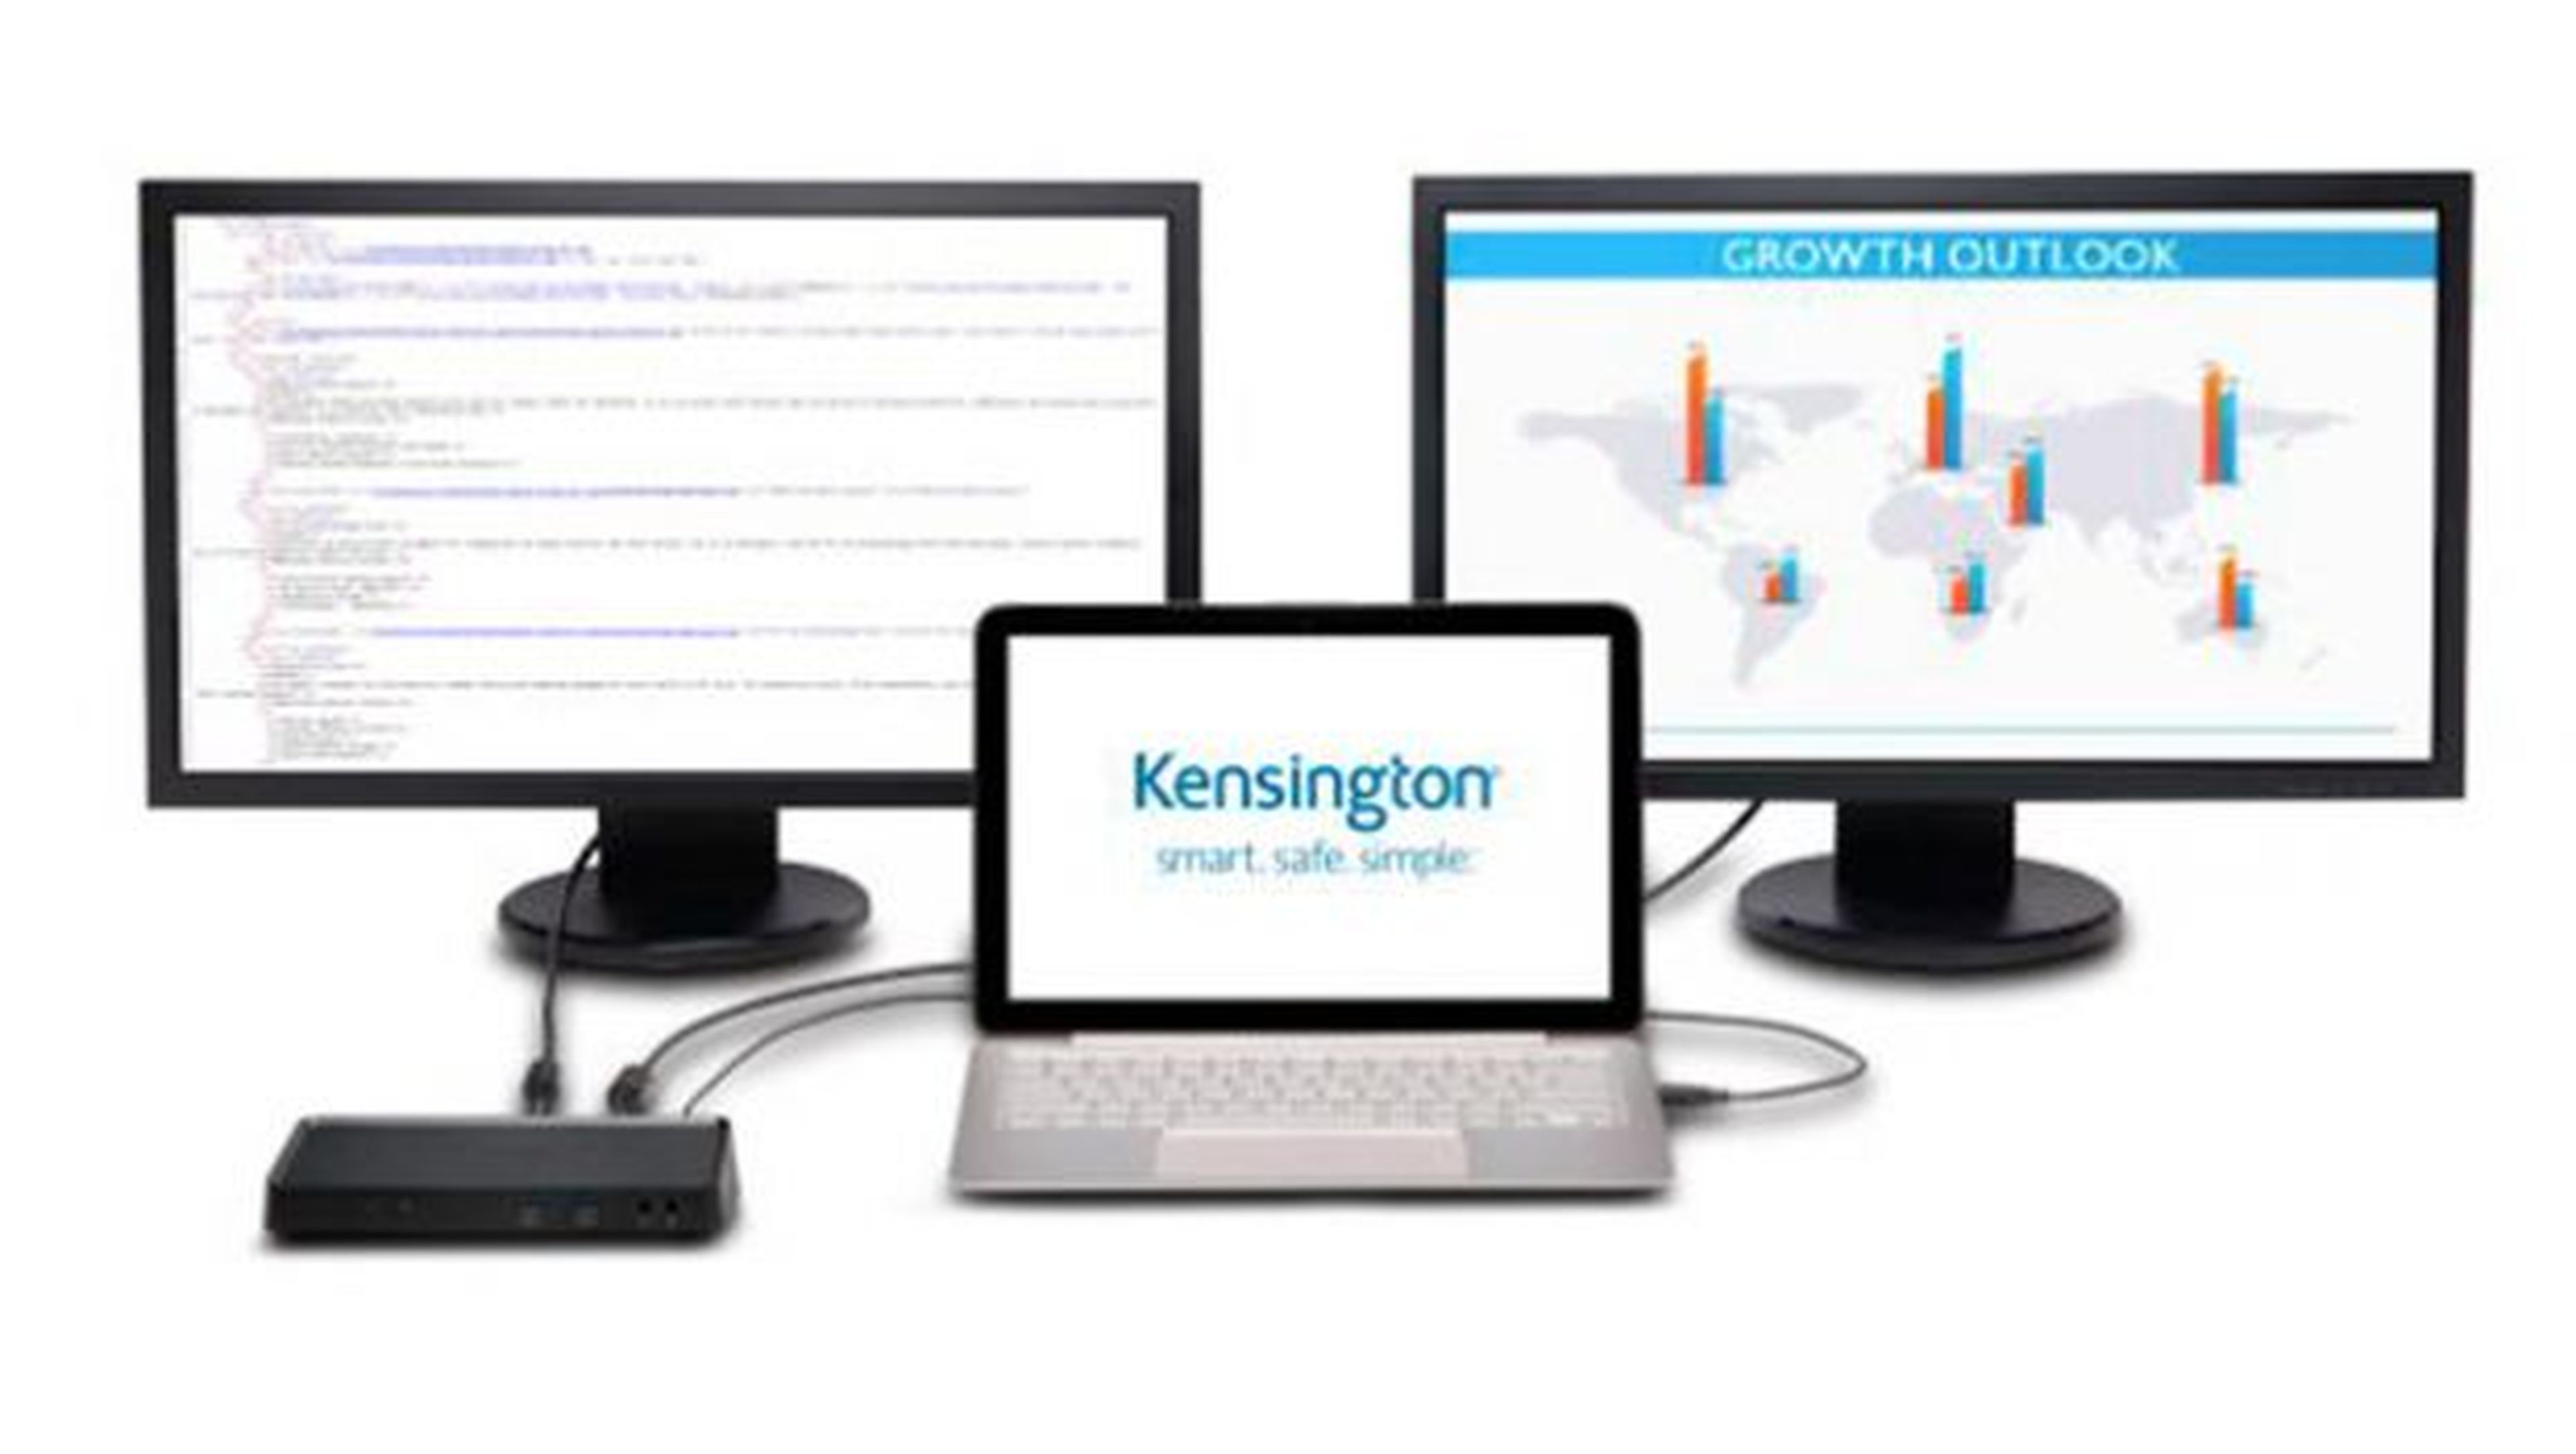 Kensington SD 3600 te permitirá ajustar fácilmente la configuración de varios monitores desde tu portátil, permitiéndote reflejar la pantalla de portátil en los monitores externos.